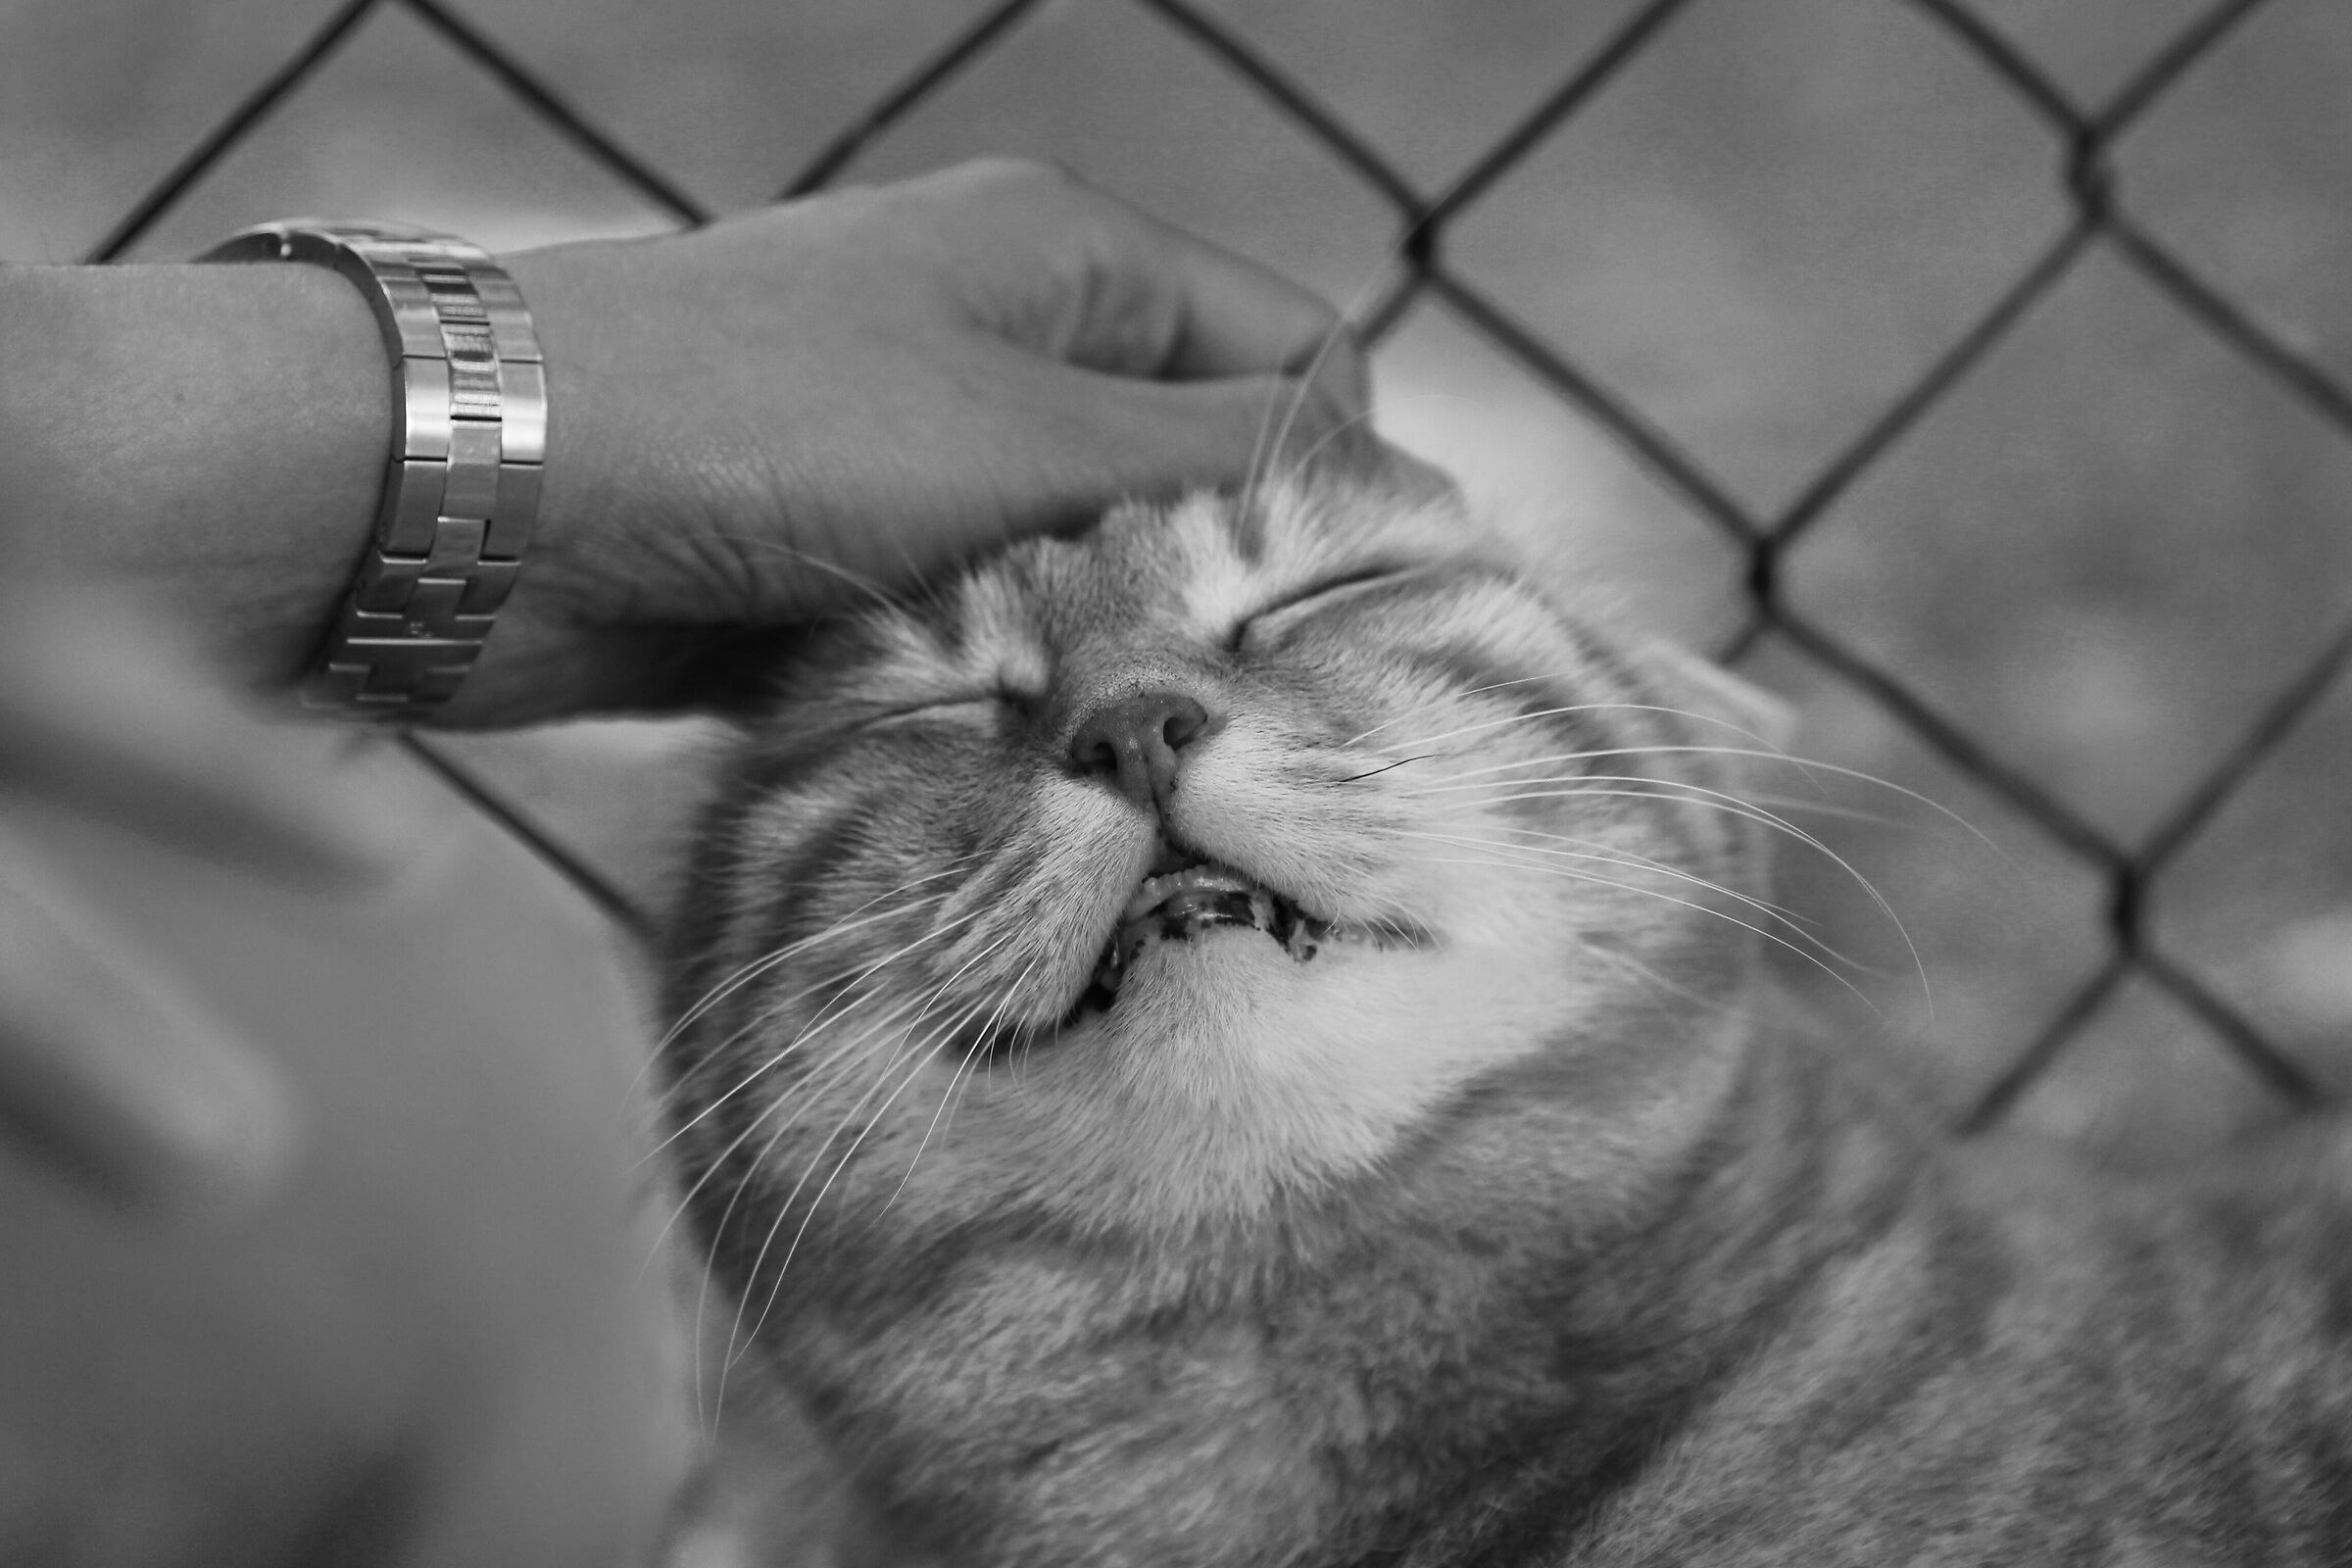 Smiling cat...